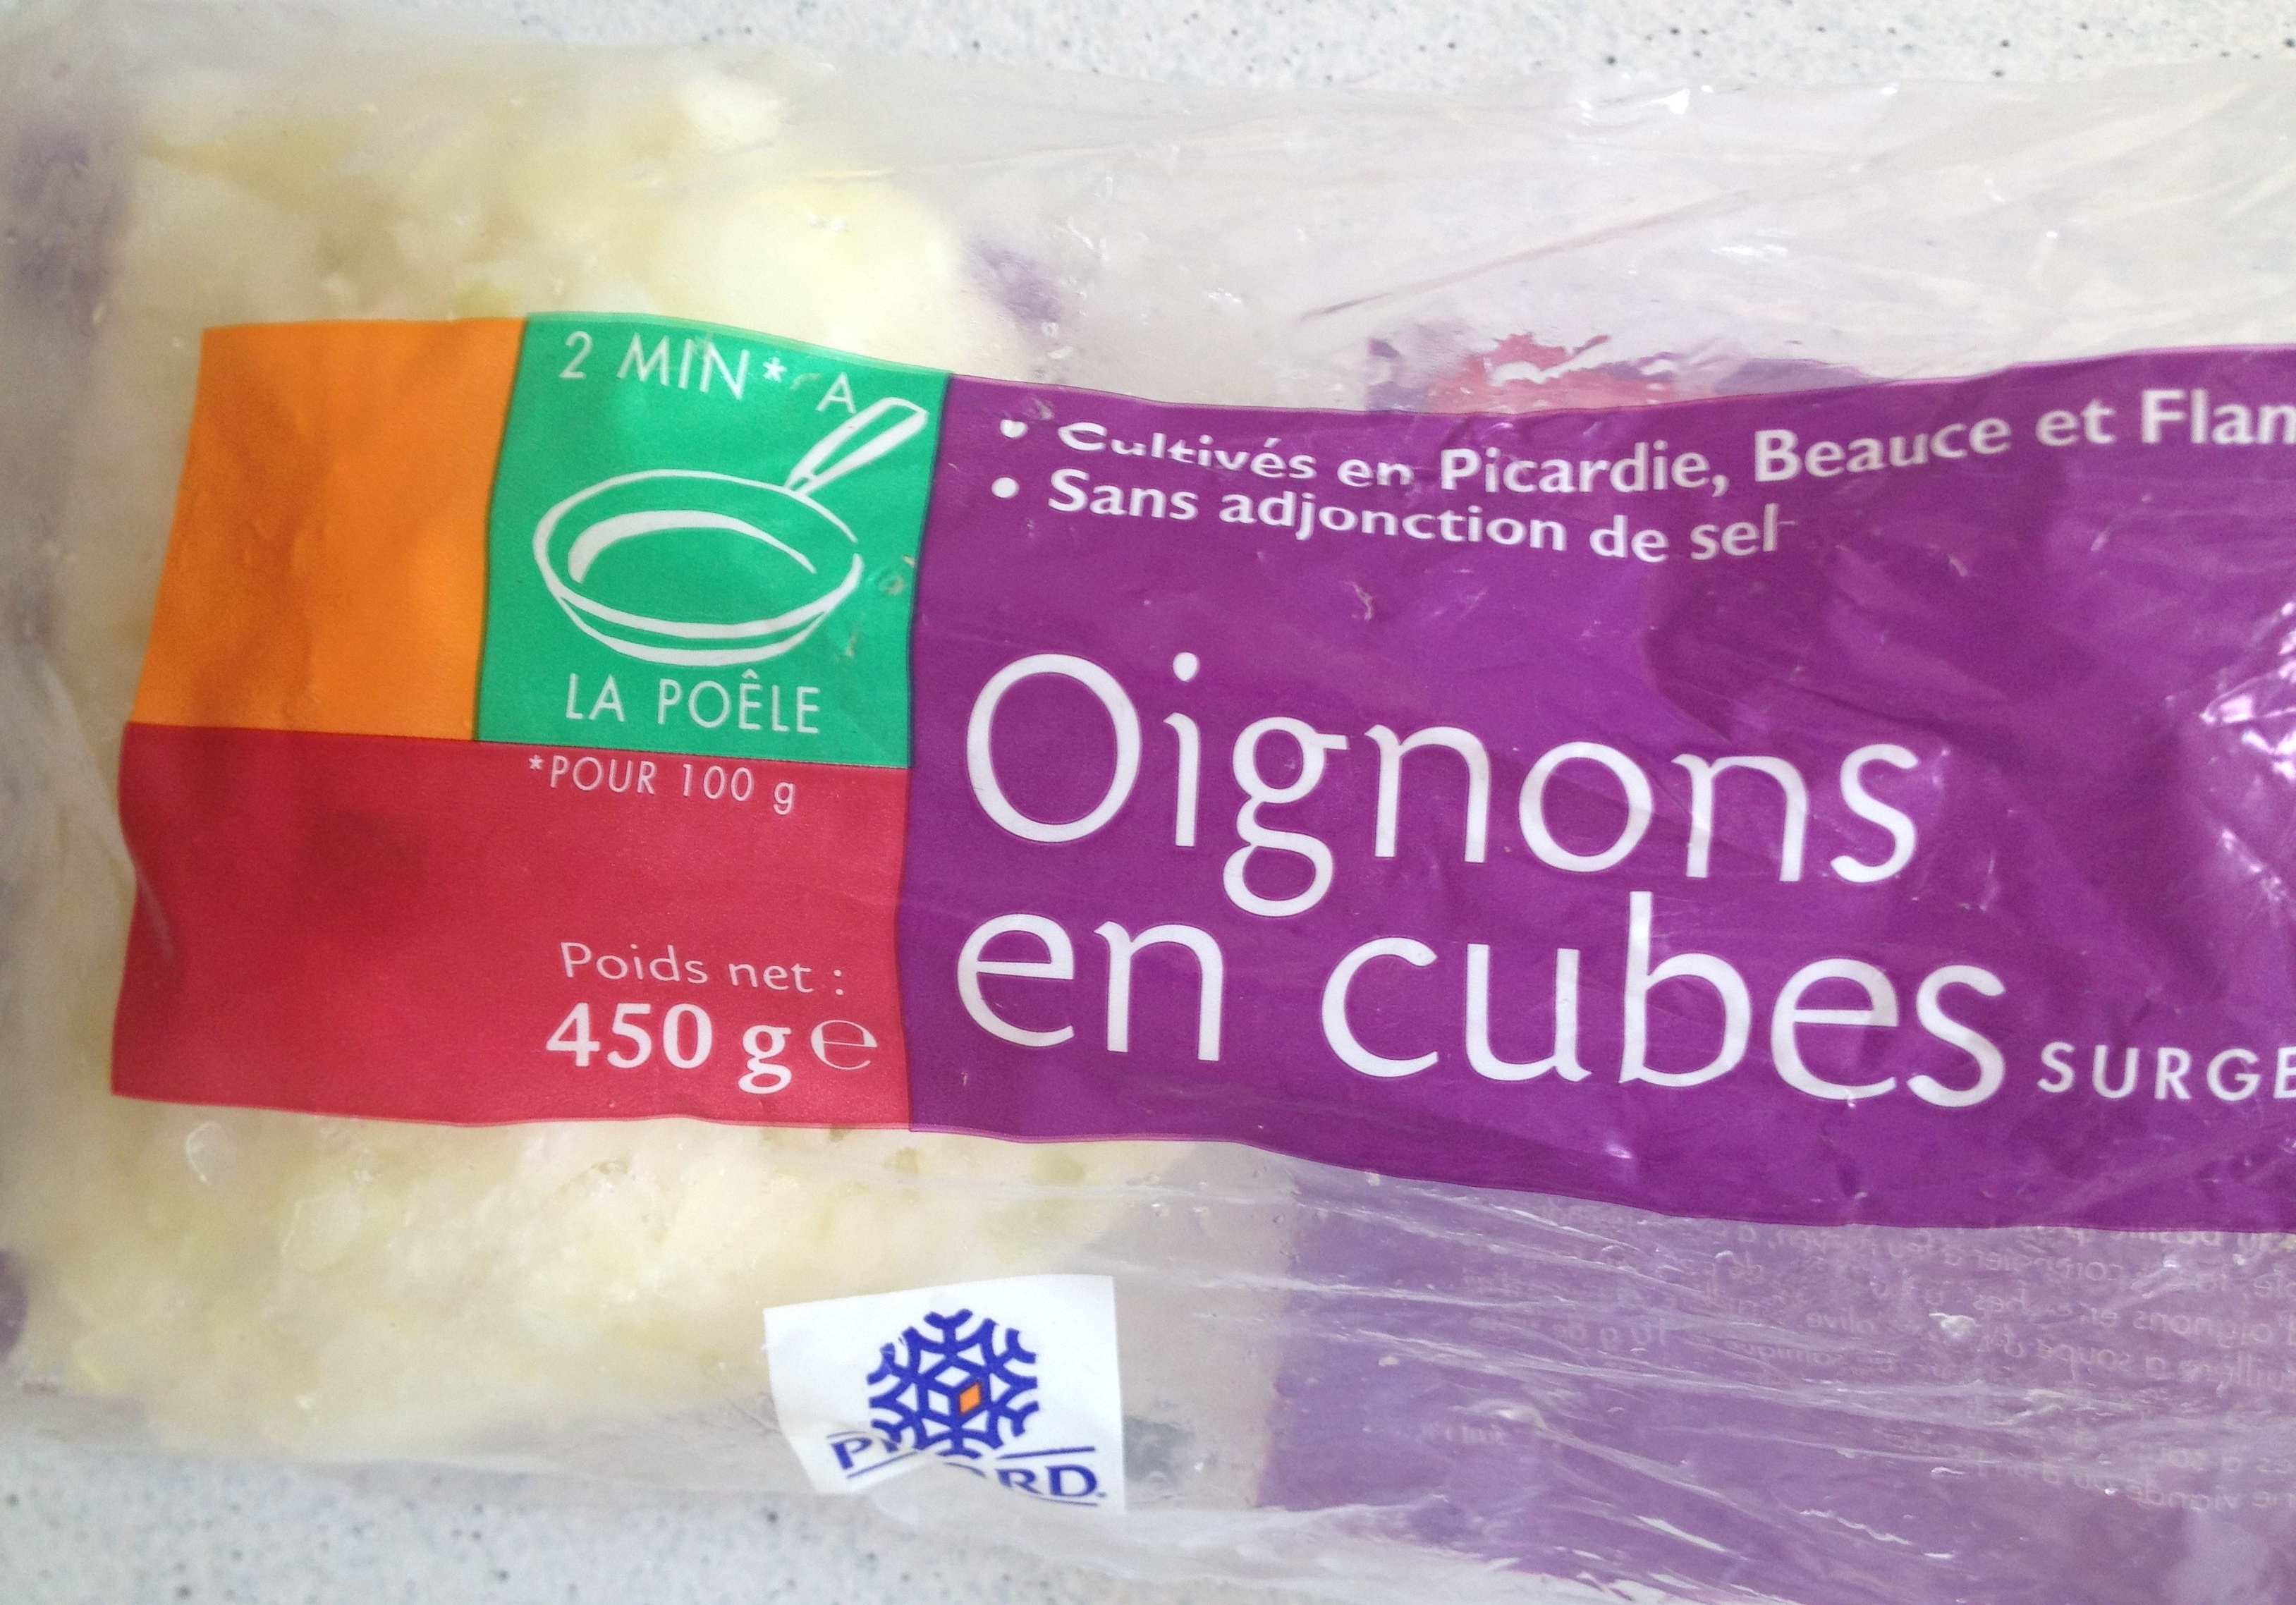 Oignons en cube surgelés - Product - fr